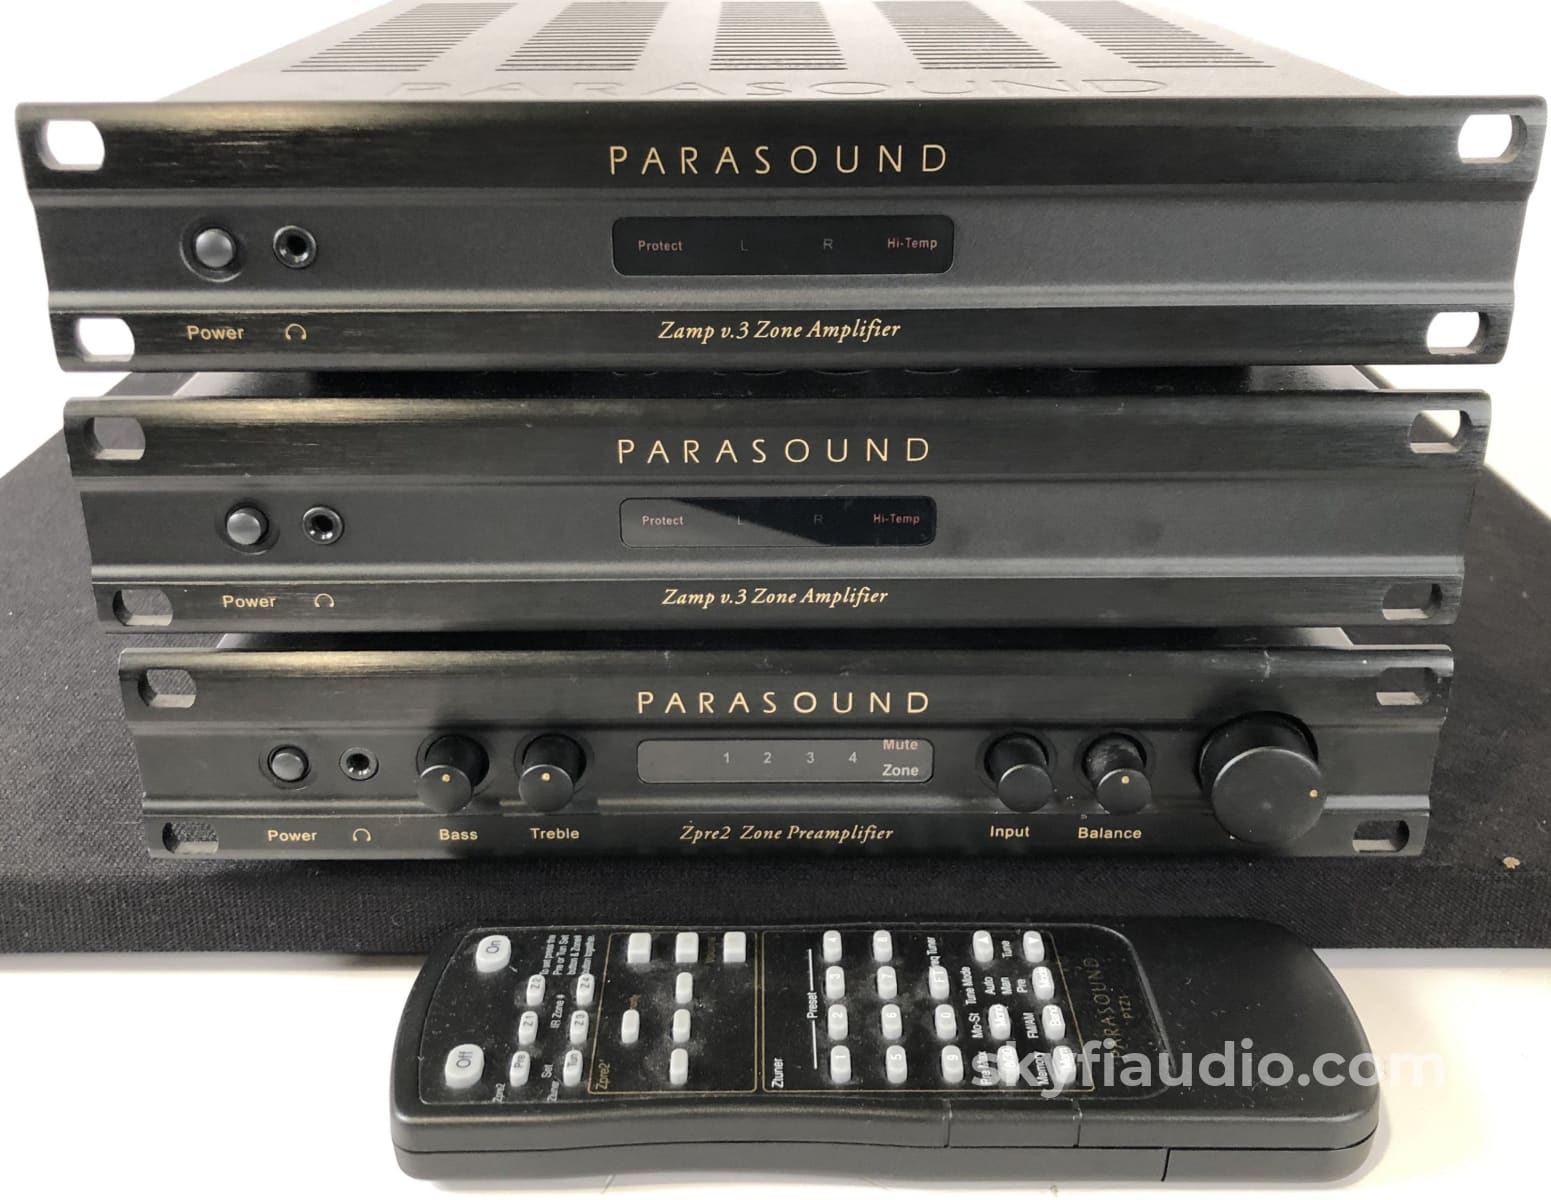 Parasound Zpre2 - Stereo Zone Preamp With Remote Preamplifier